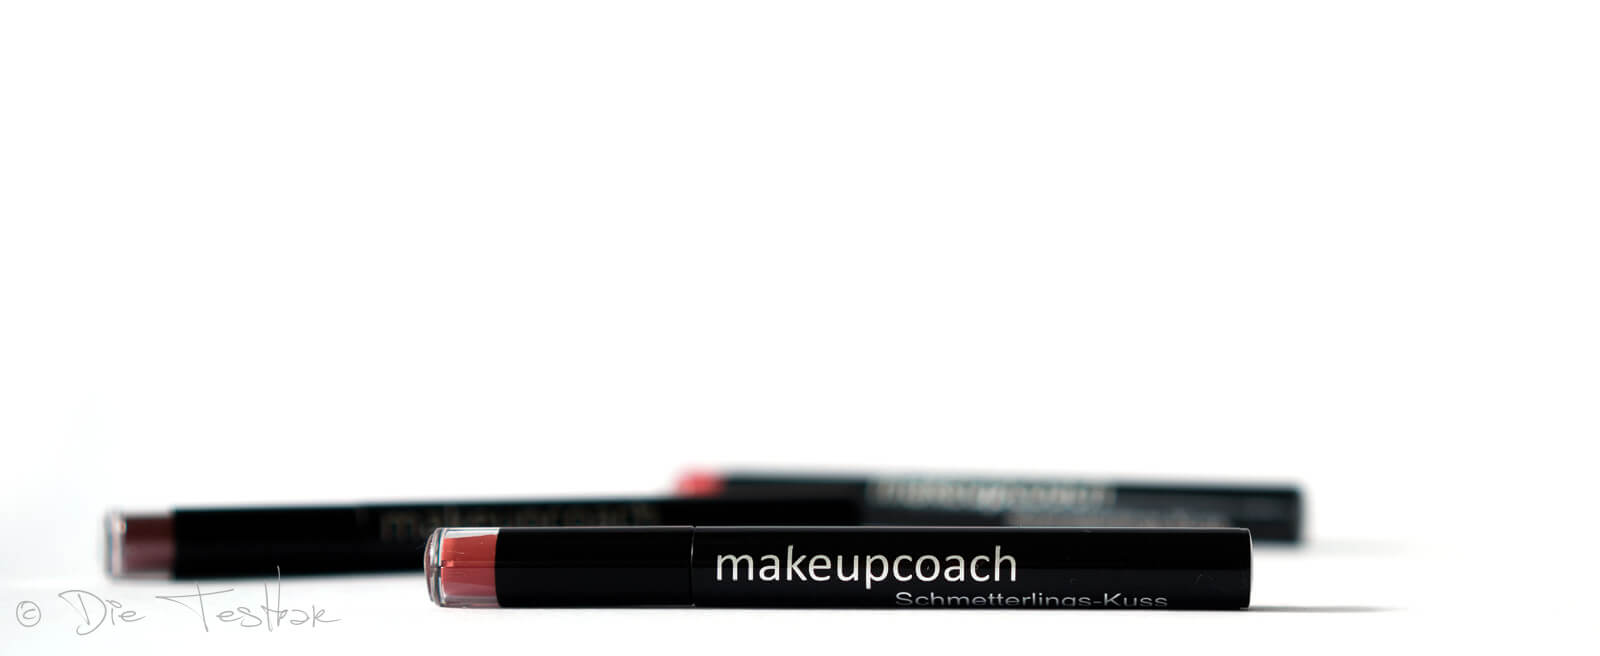 Für wunderschöne Lippen - Hochwertiges Lippen-Make-up vom makeupcoach 15